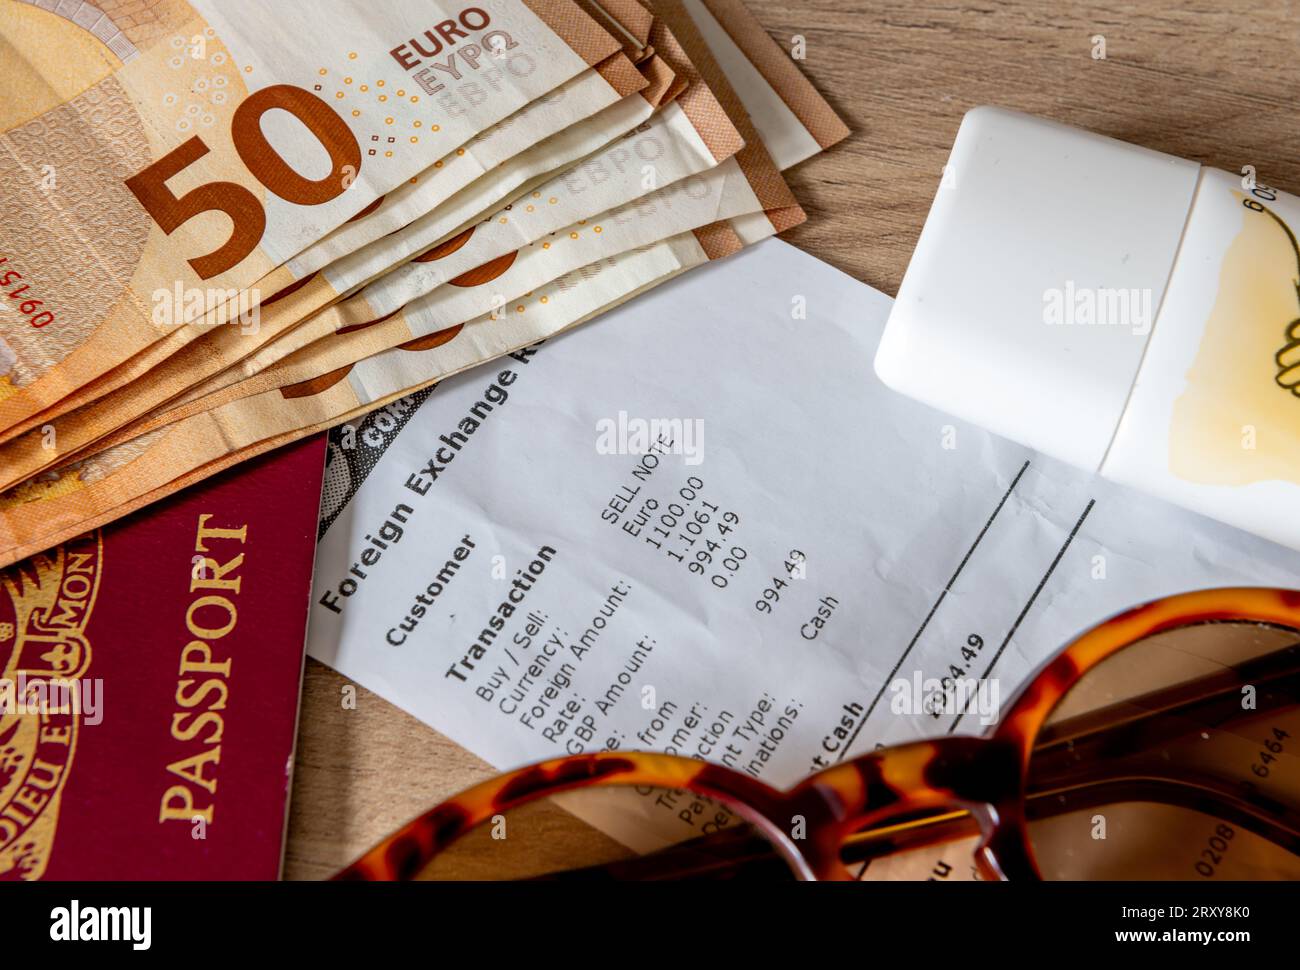 Un concept d'argent de voyage, de vacances et de change d'argent avec des billets de banque en euros, un passeport, une crème solaire et des lunettes de soleil sur un reçu de change. Banque D'Images